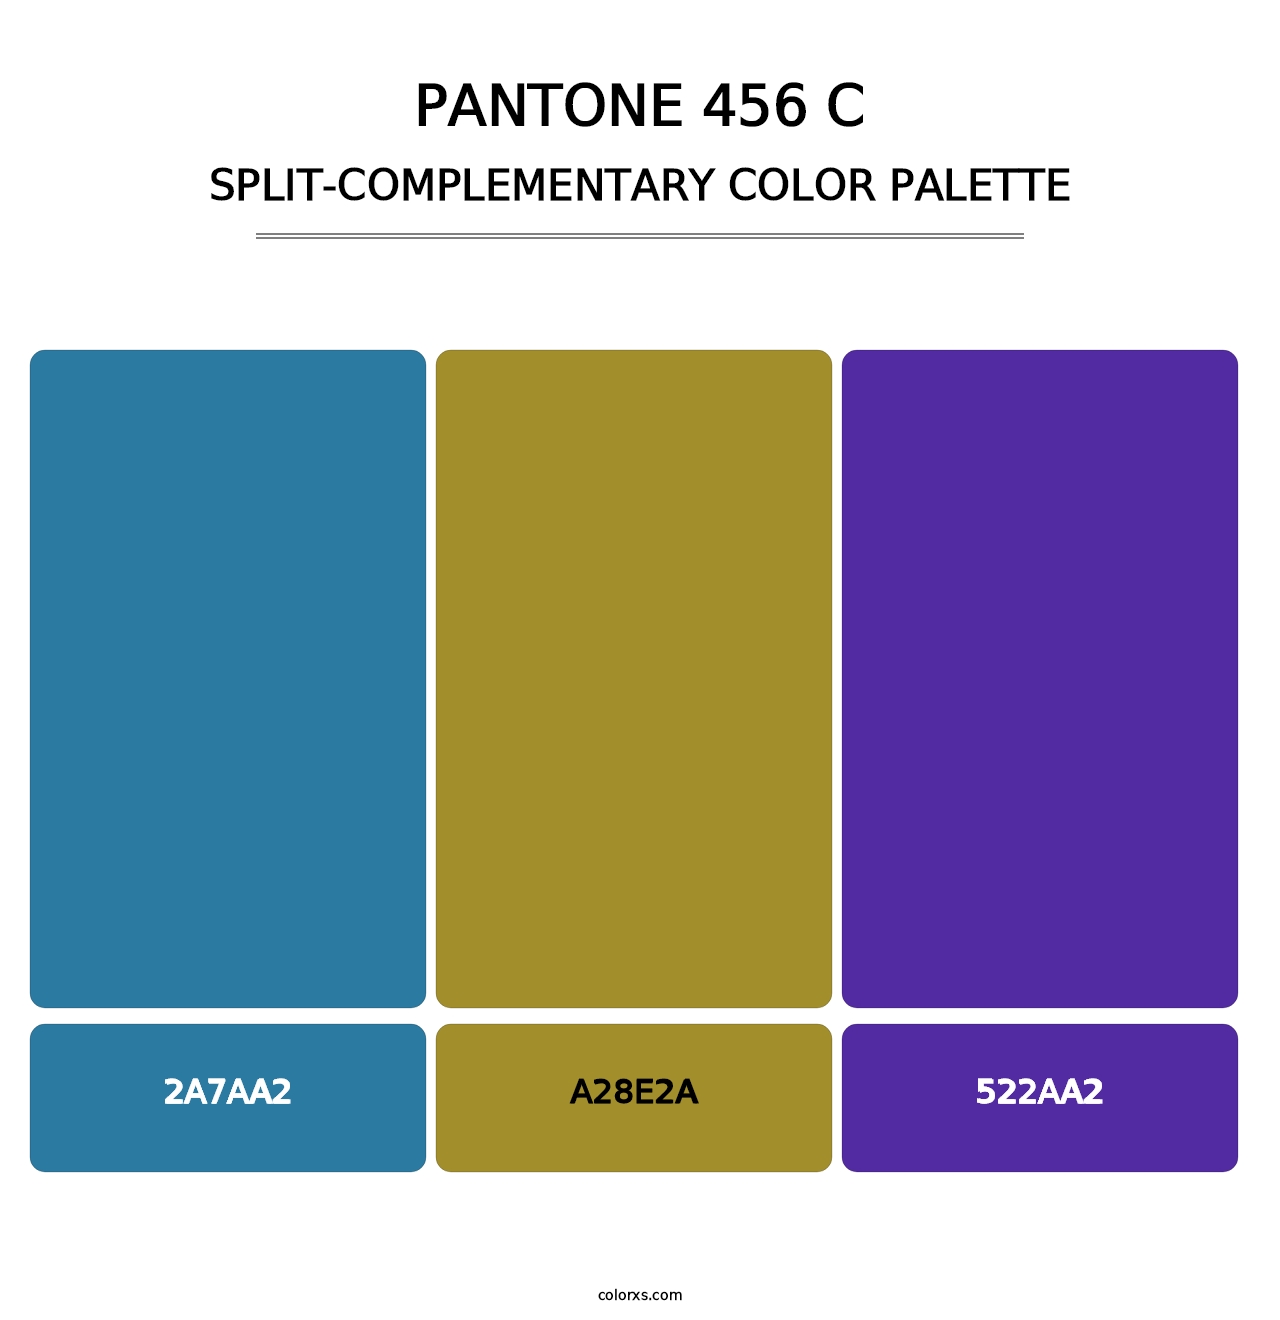 PANTONE 456 C - Split-Complementary Color Palette